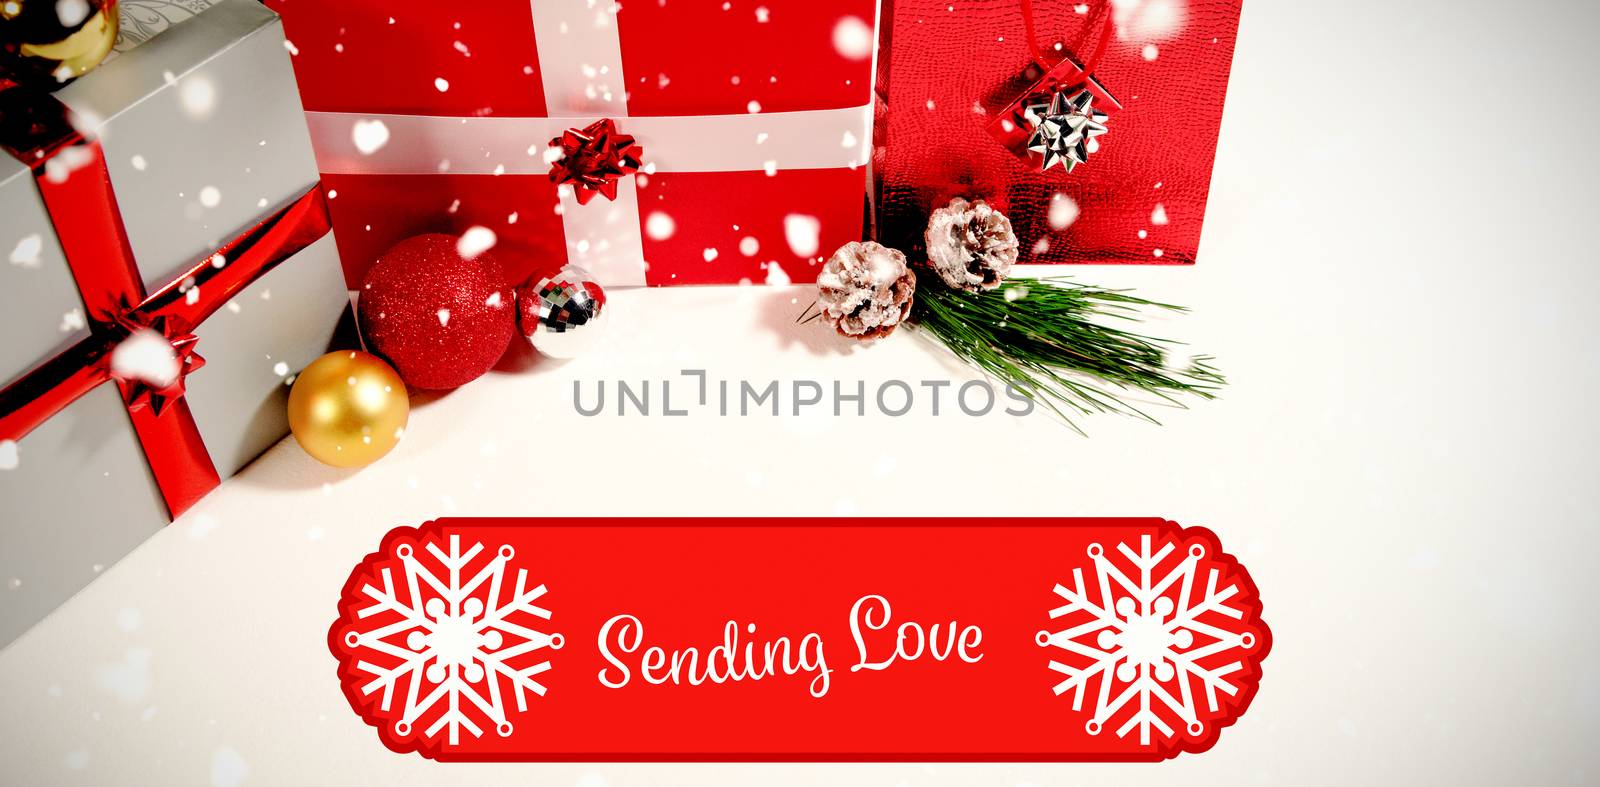 Banner sending love against christmas gifts against white background